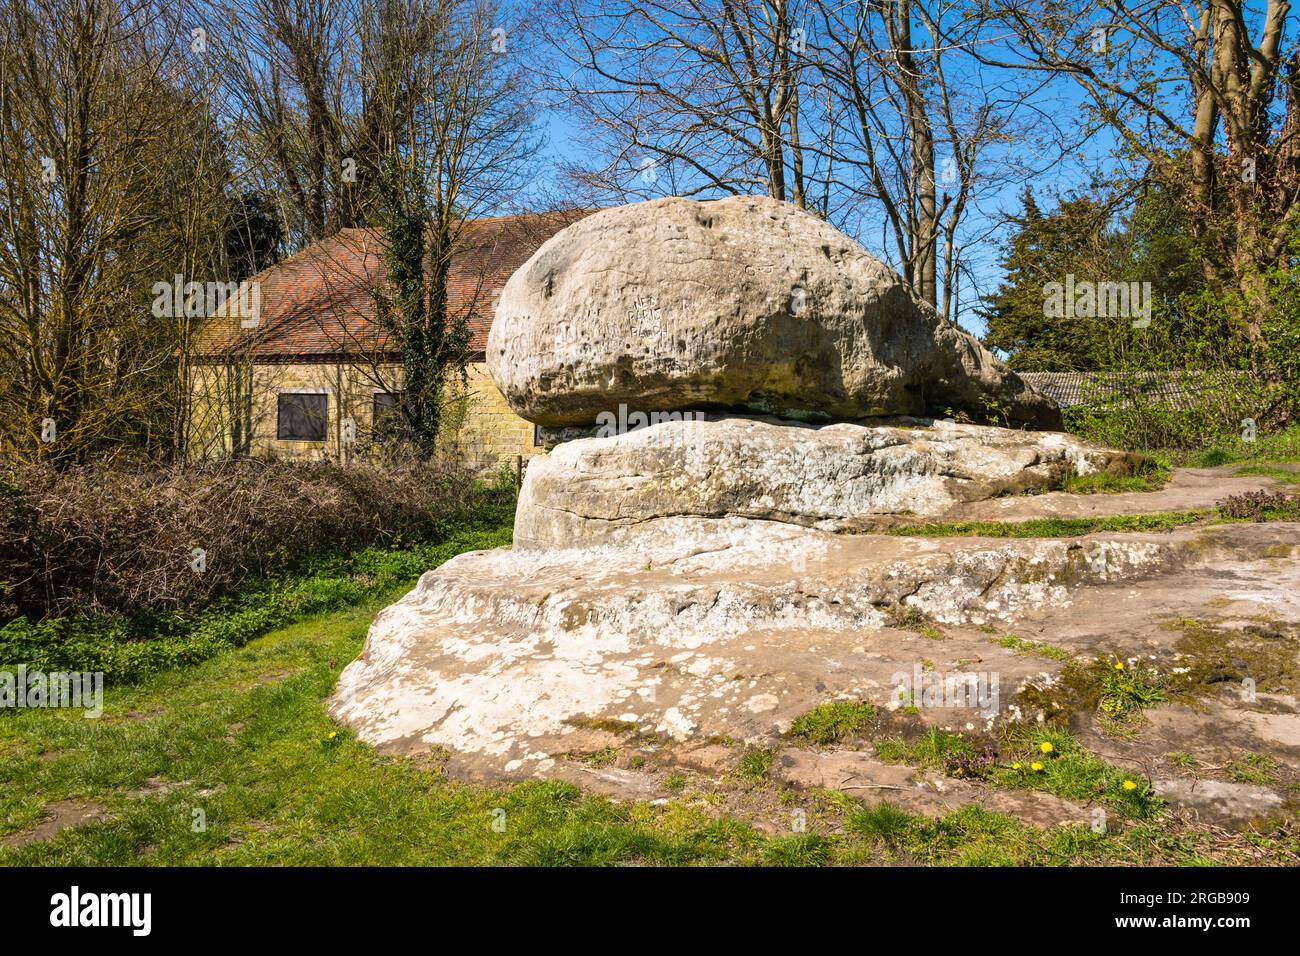 The Chiding Stone près du village de Chiddingstone, considéré comme un autel druide, un ancien marqueur de frontière anglo-saxon, Kent, Angleterre Banque D'Images